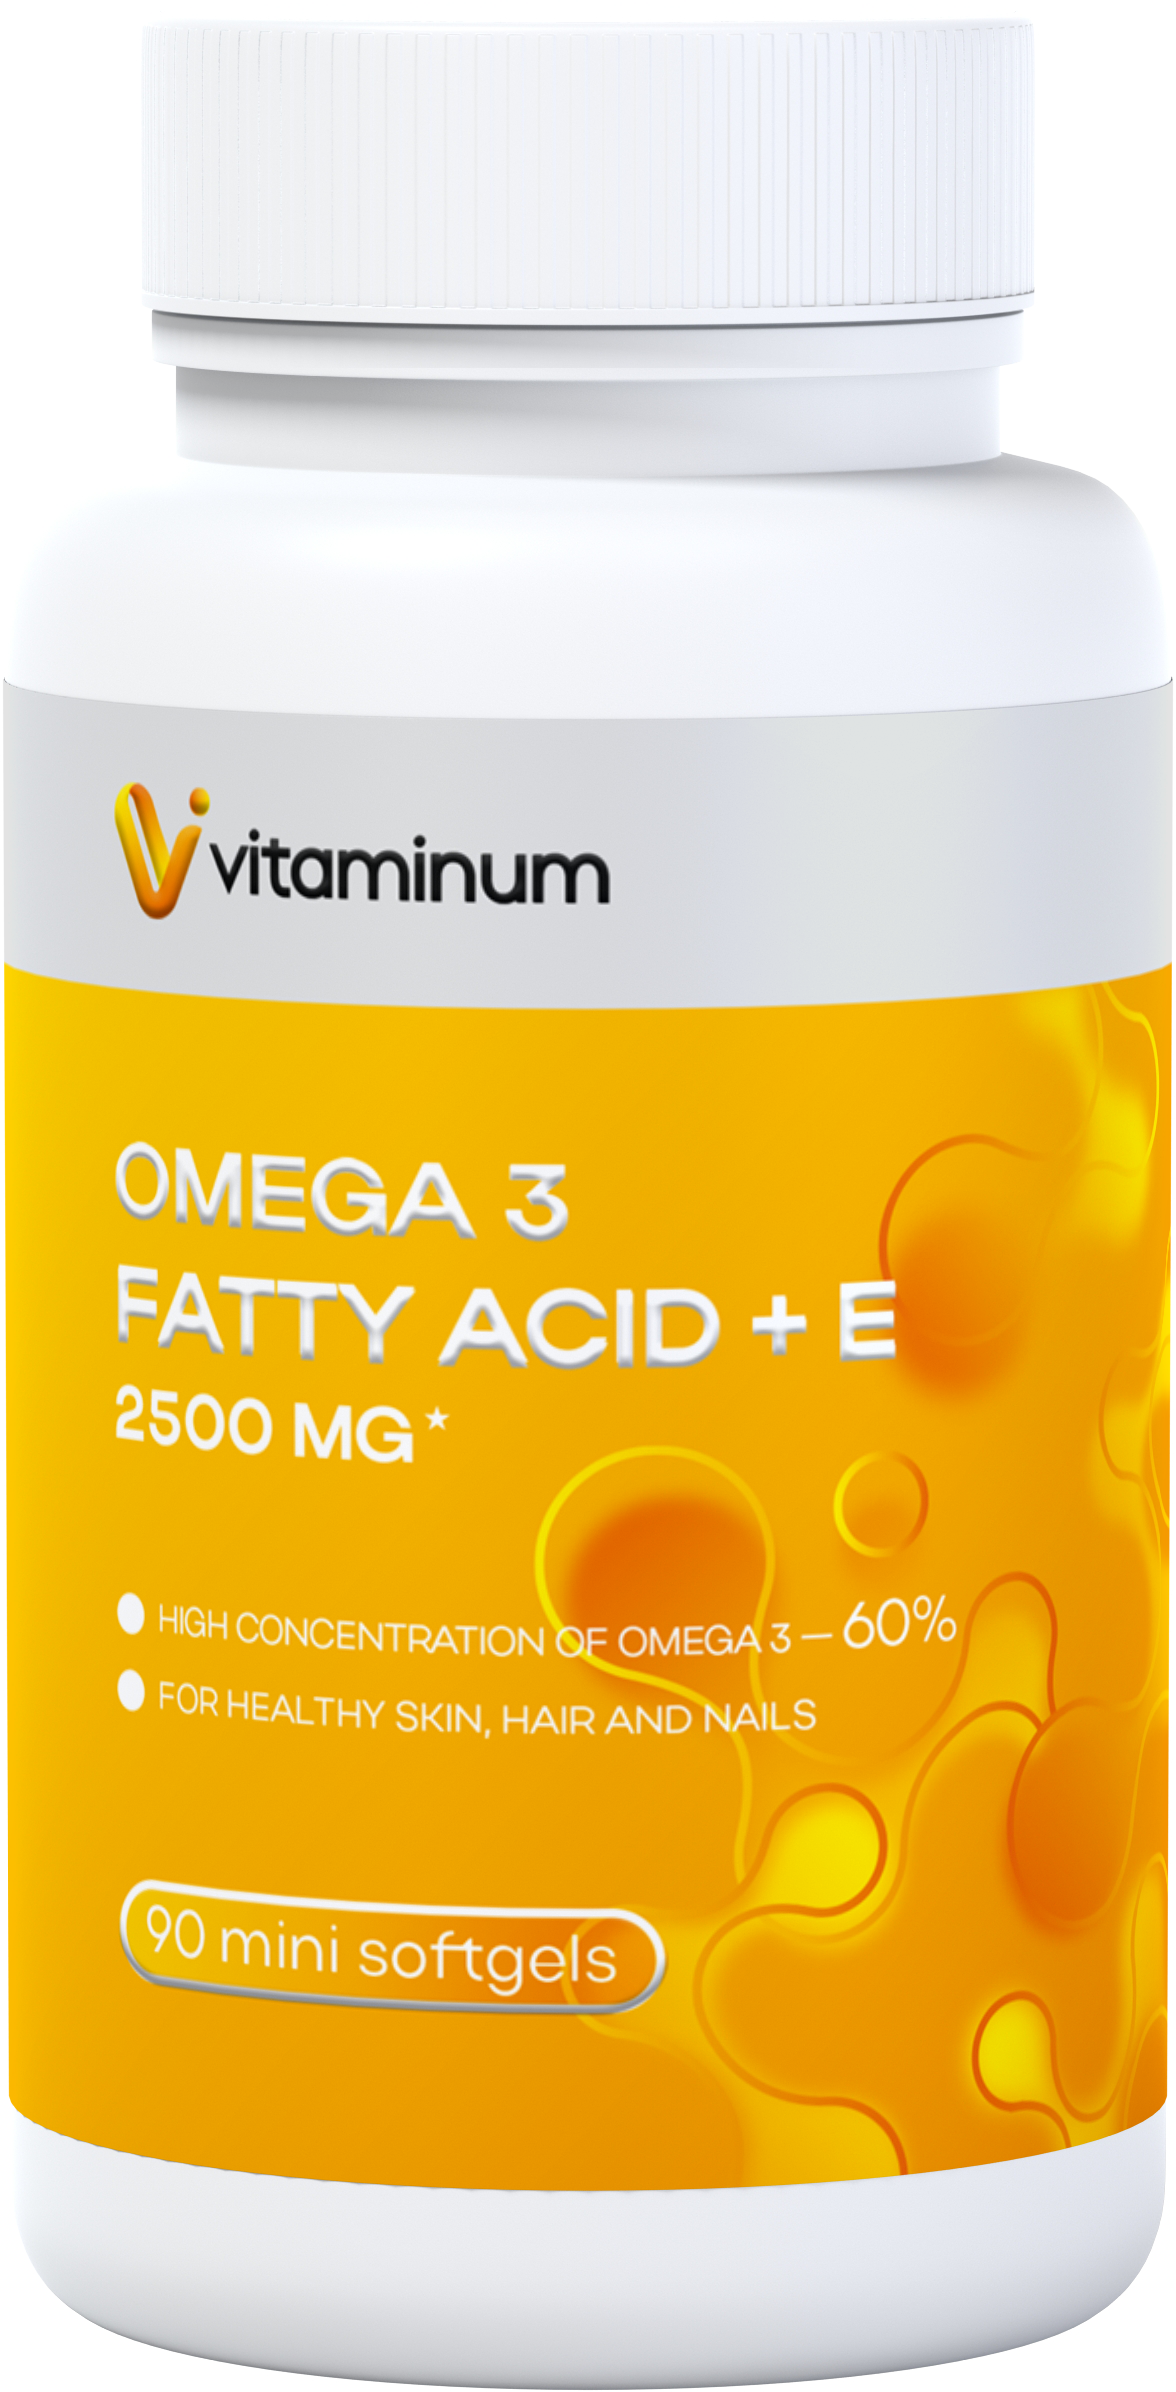  Vitaminum ОМЕГА 3 60% + витамин Е (2500 MG*) 90 капсул 700 мг   в Ялте